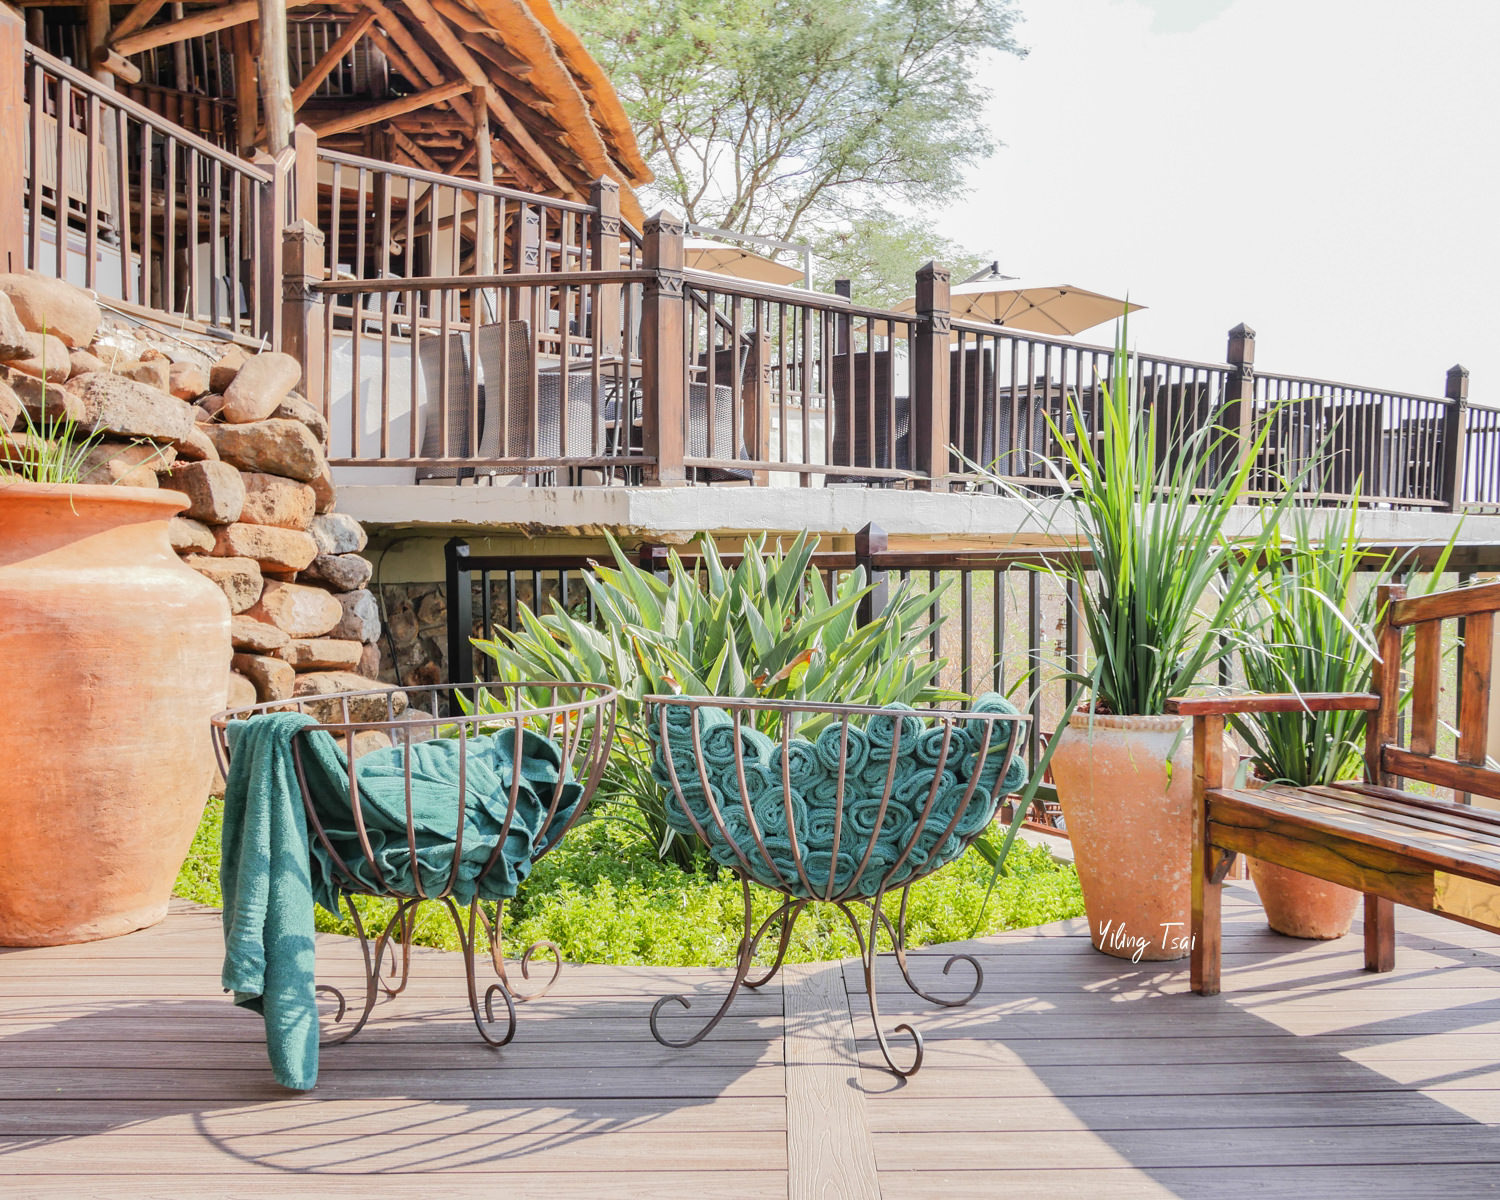 辛巴威維多利亞瀑布住宿 Victoria Falls Safari Lodge 最接近大草原的維多利亞瀑布飯店